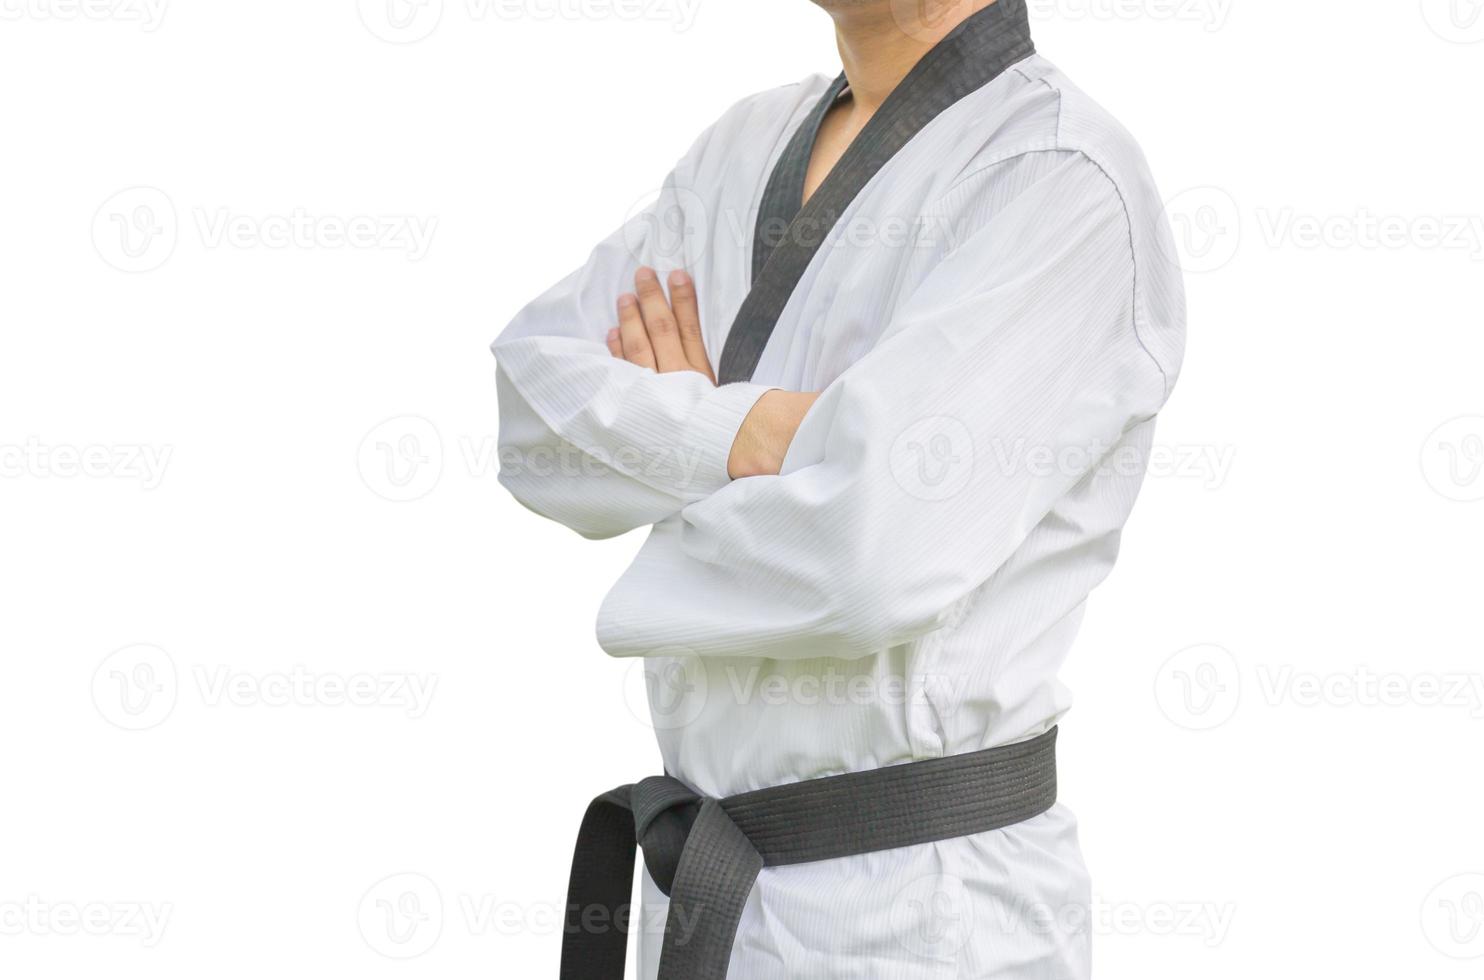 jovem lutador faixa preta de taekwondo posando de treinamento de karatê. retrato de homem vestindo karategi com traçado de recorte em fundo branco foto